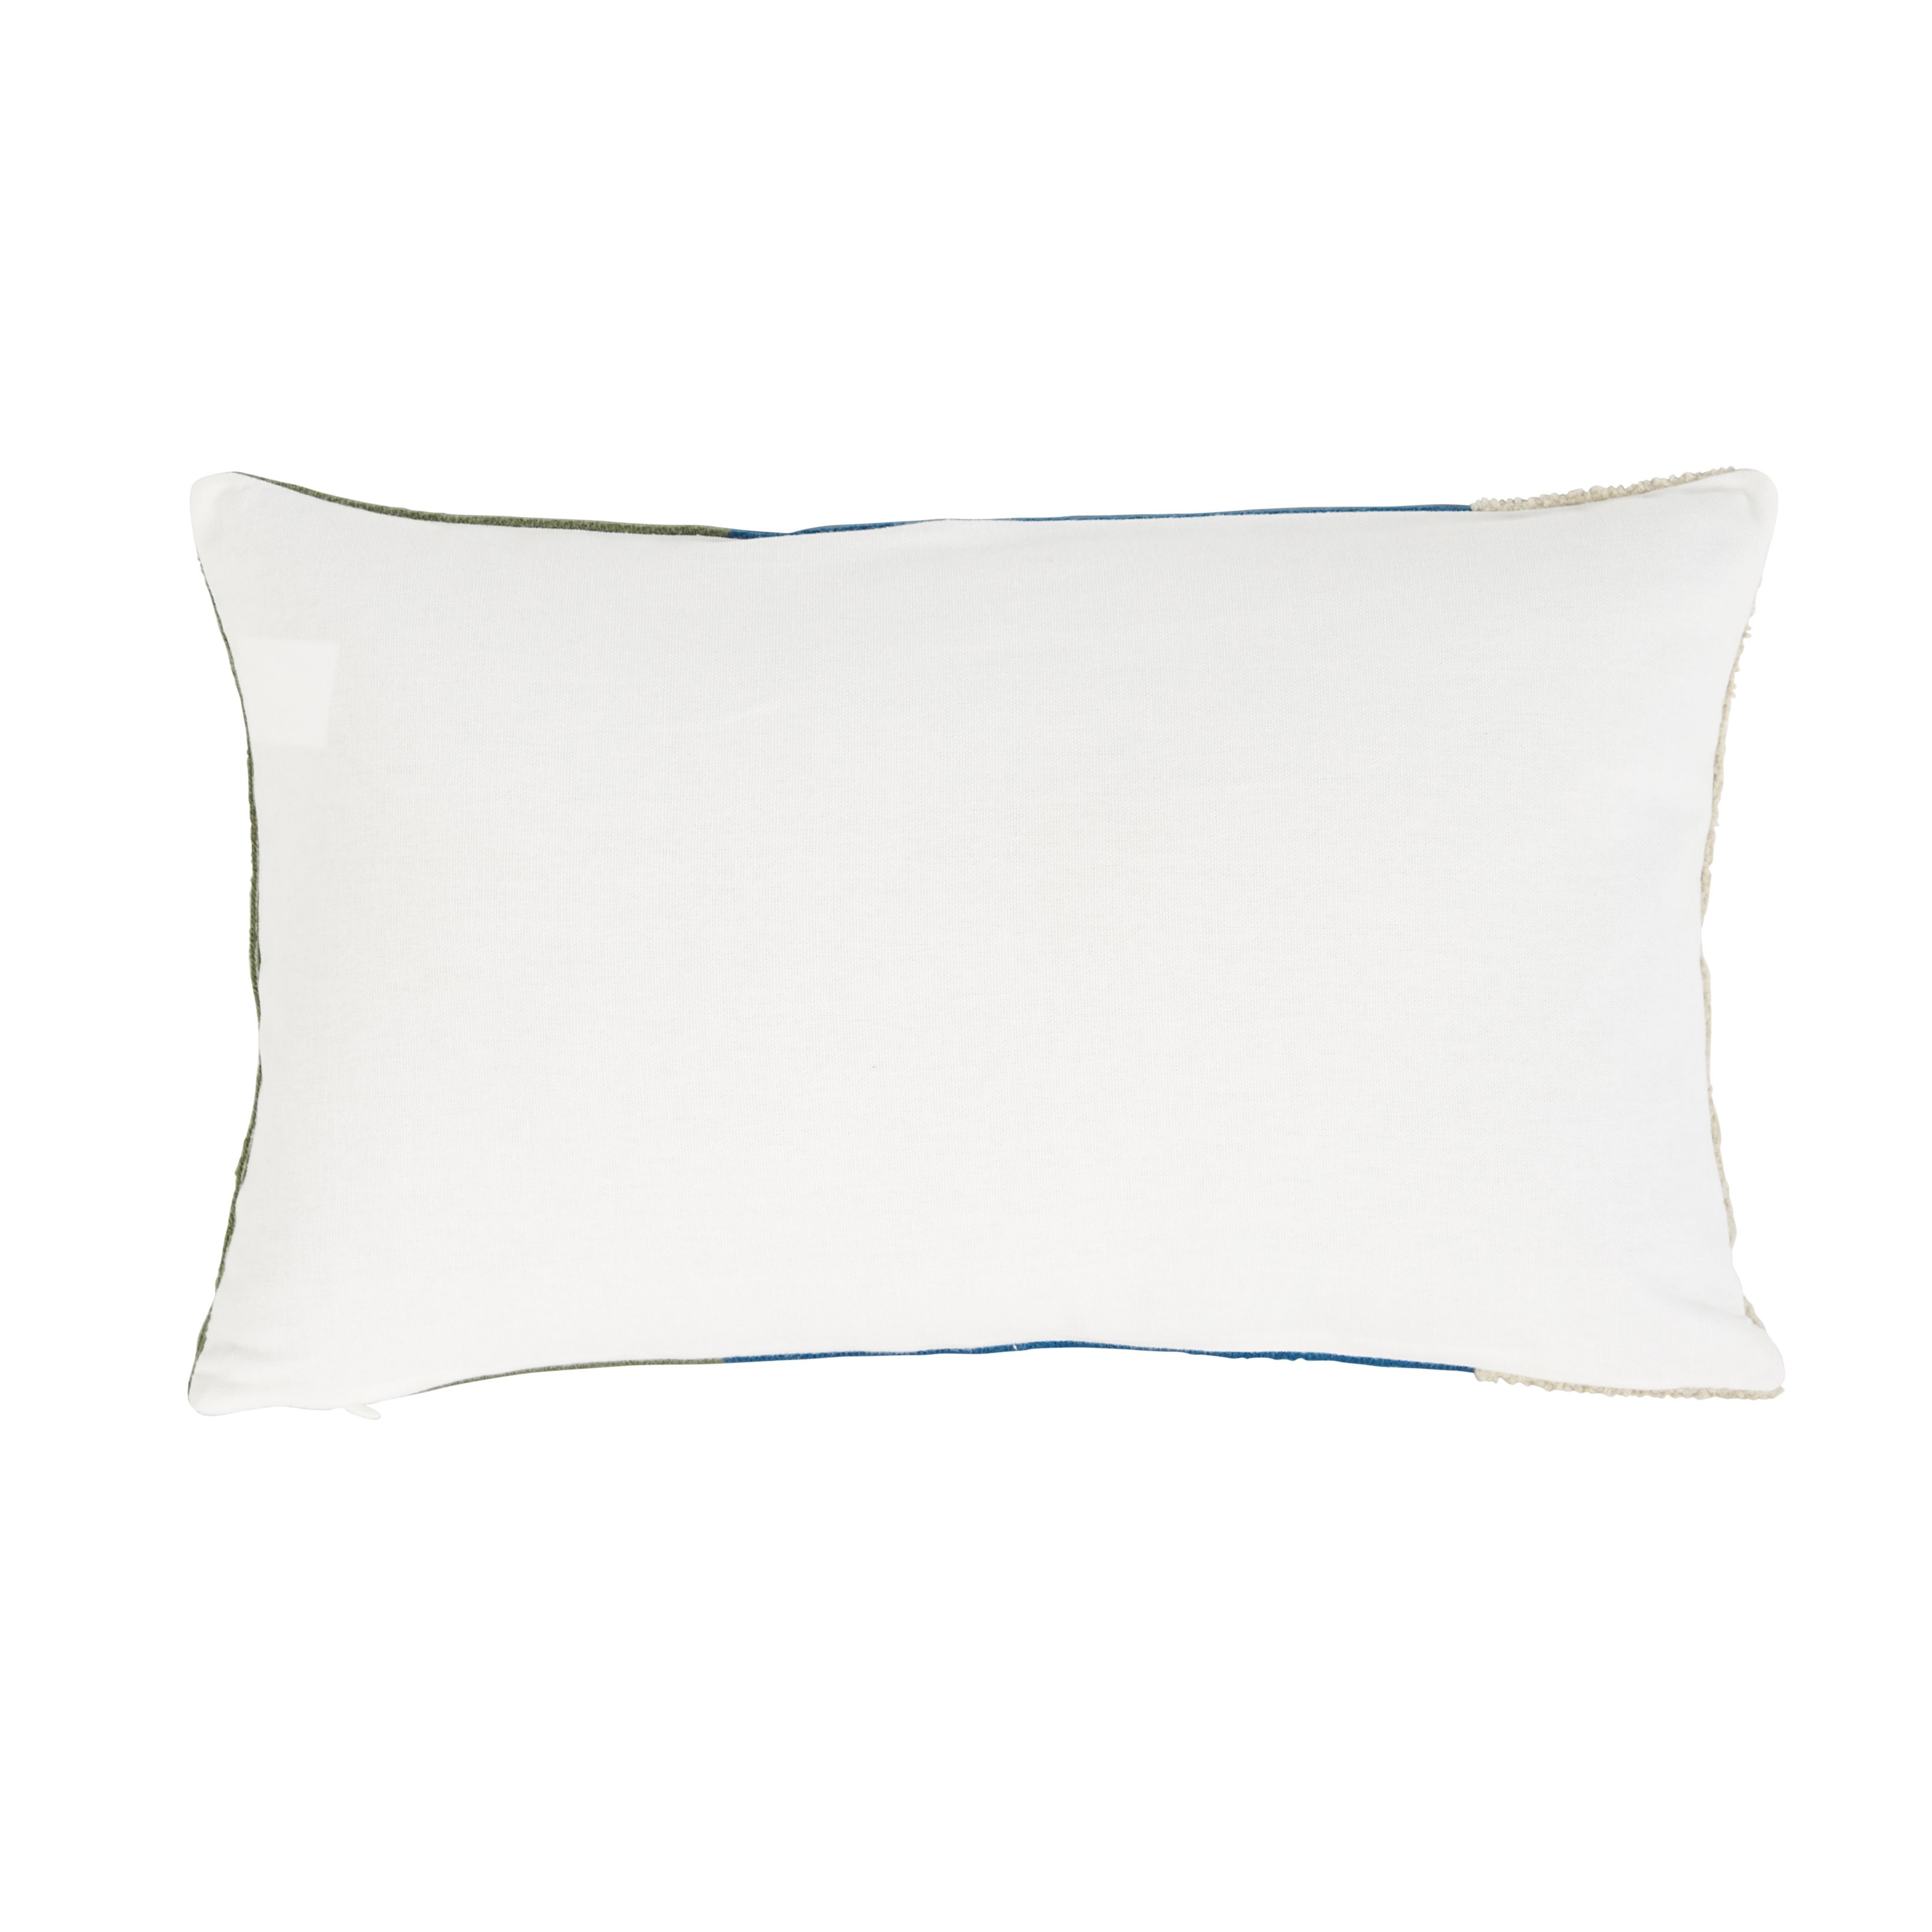 GoodHome Kisiria Multicolour Geometric Outdoor Cushion (L)50cm x (W)30cm